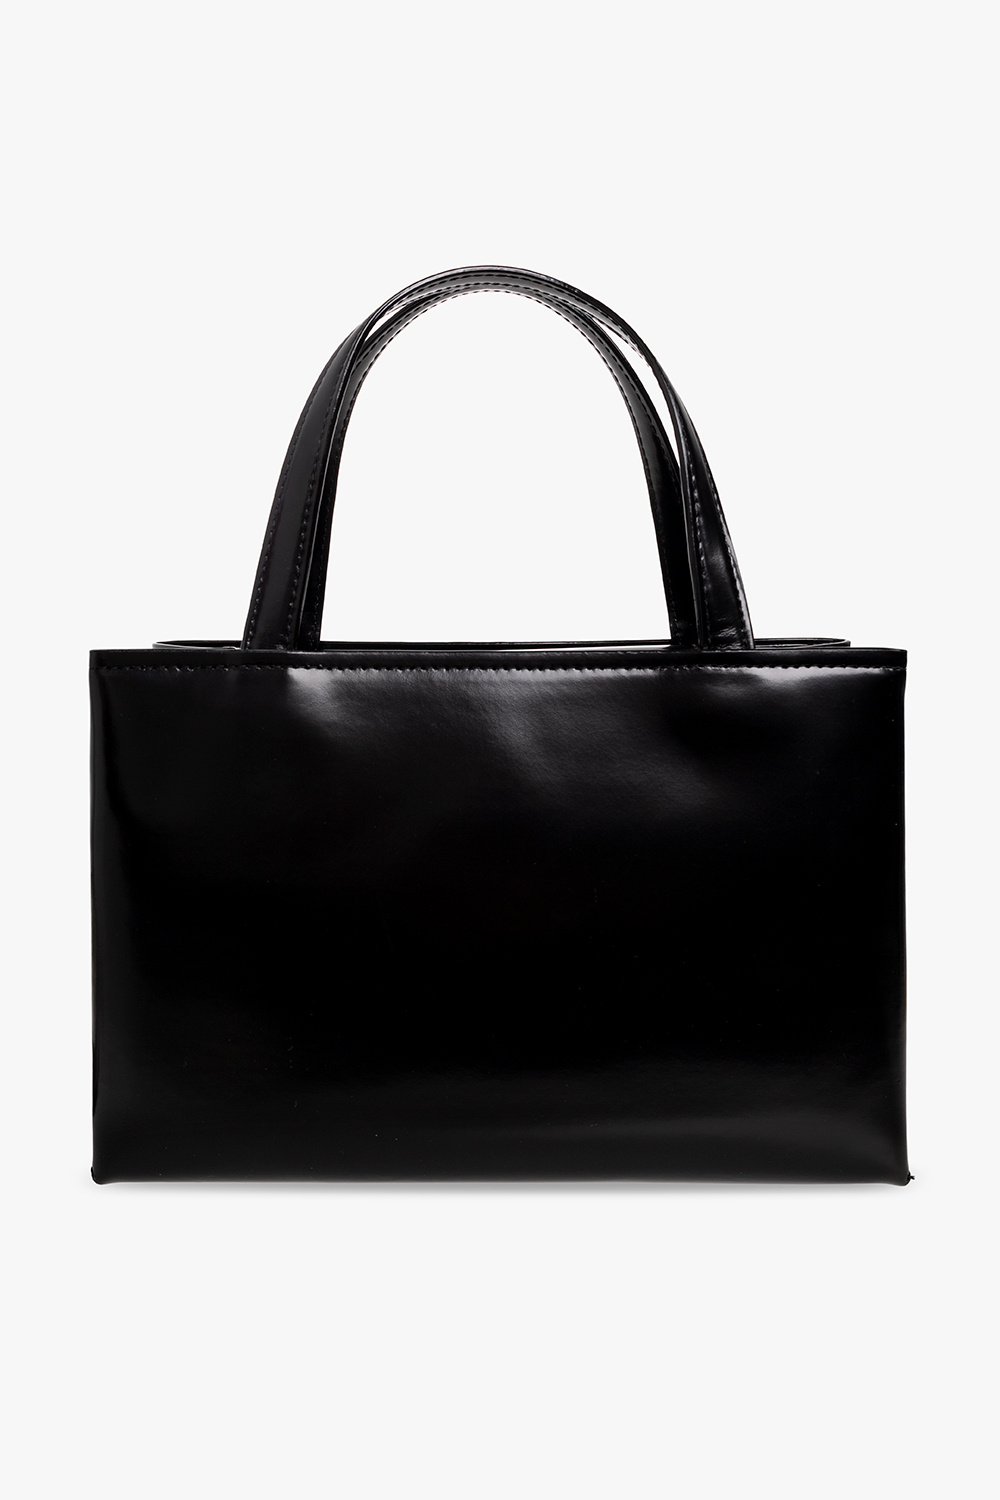 Secondhandbags I Echtheitscheck Louis Vuitton Blog